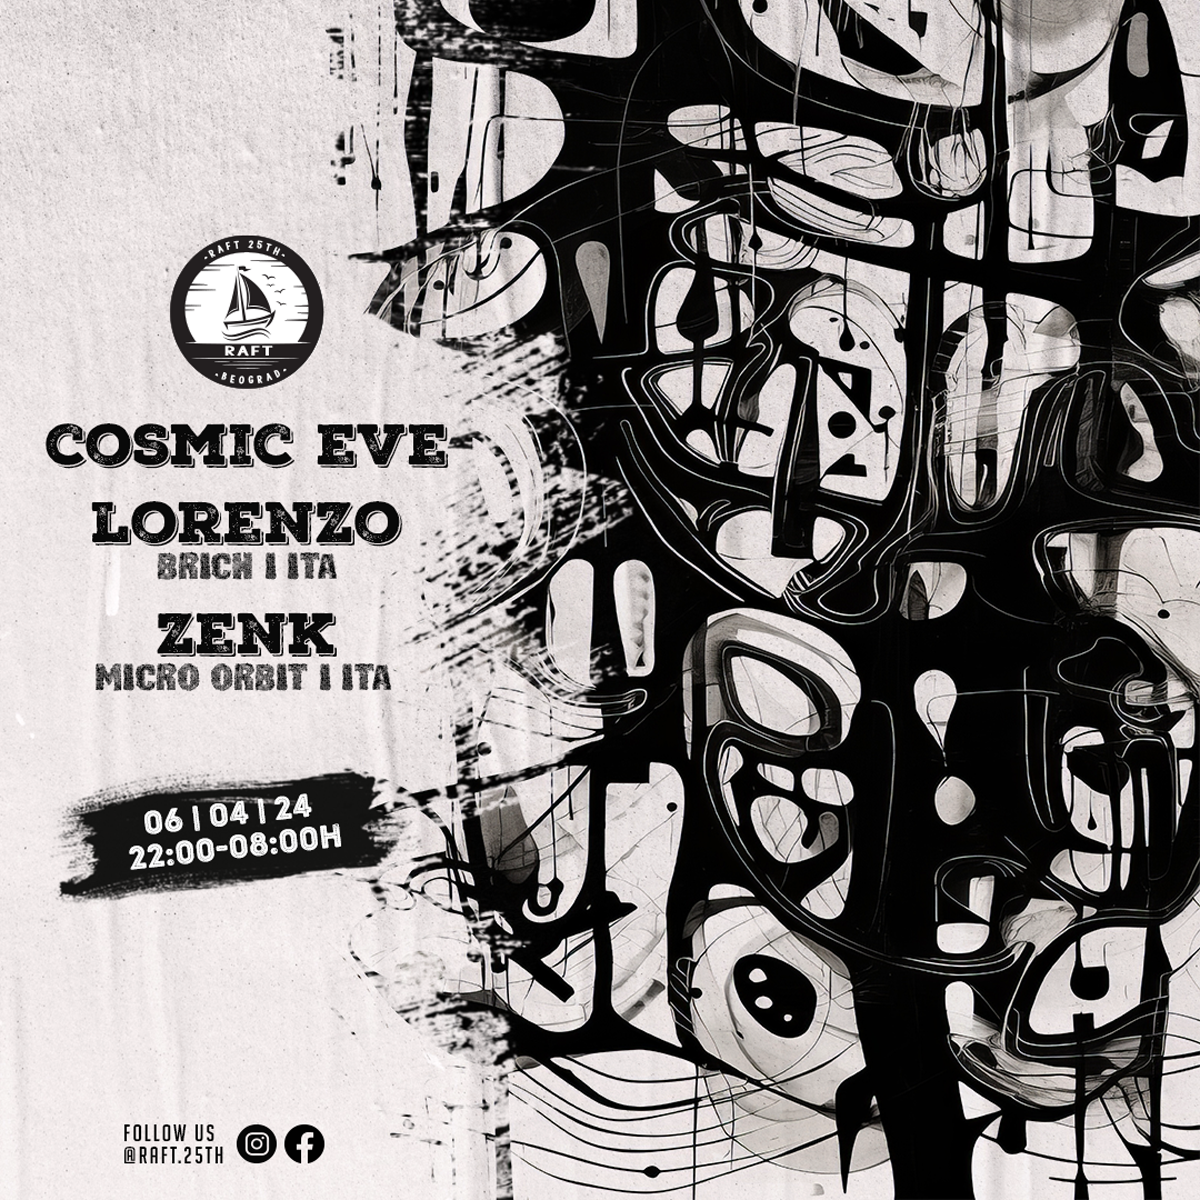 Raft 25th presents: Cosmic Eve - Lorenzo - Zenk - フライヤー表